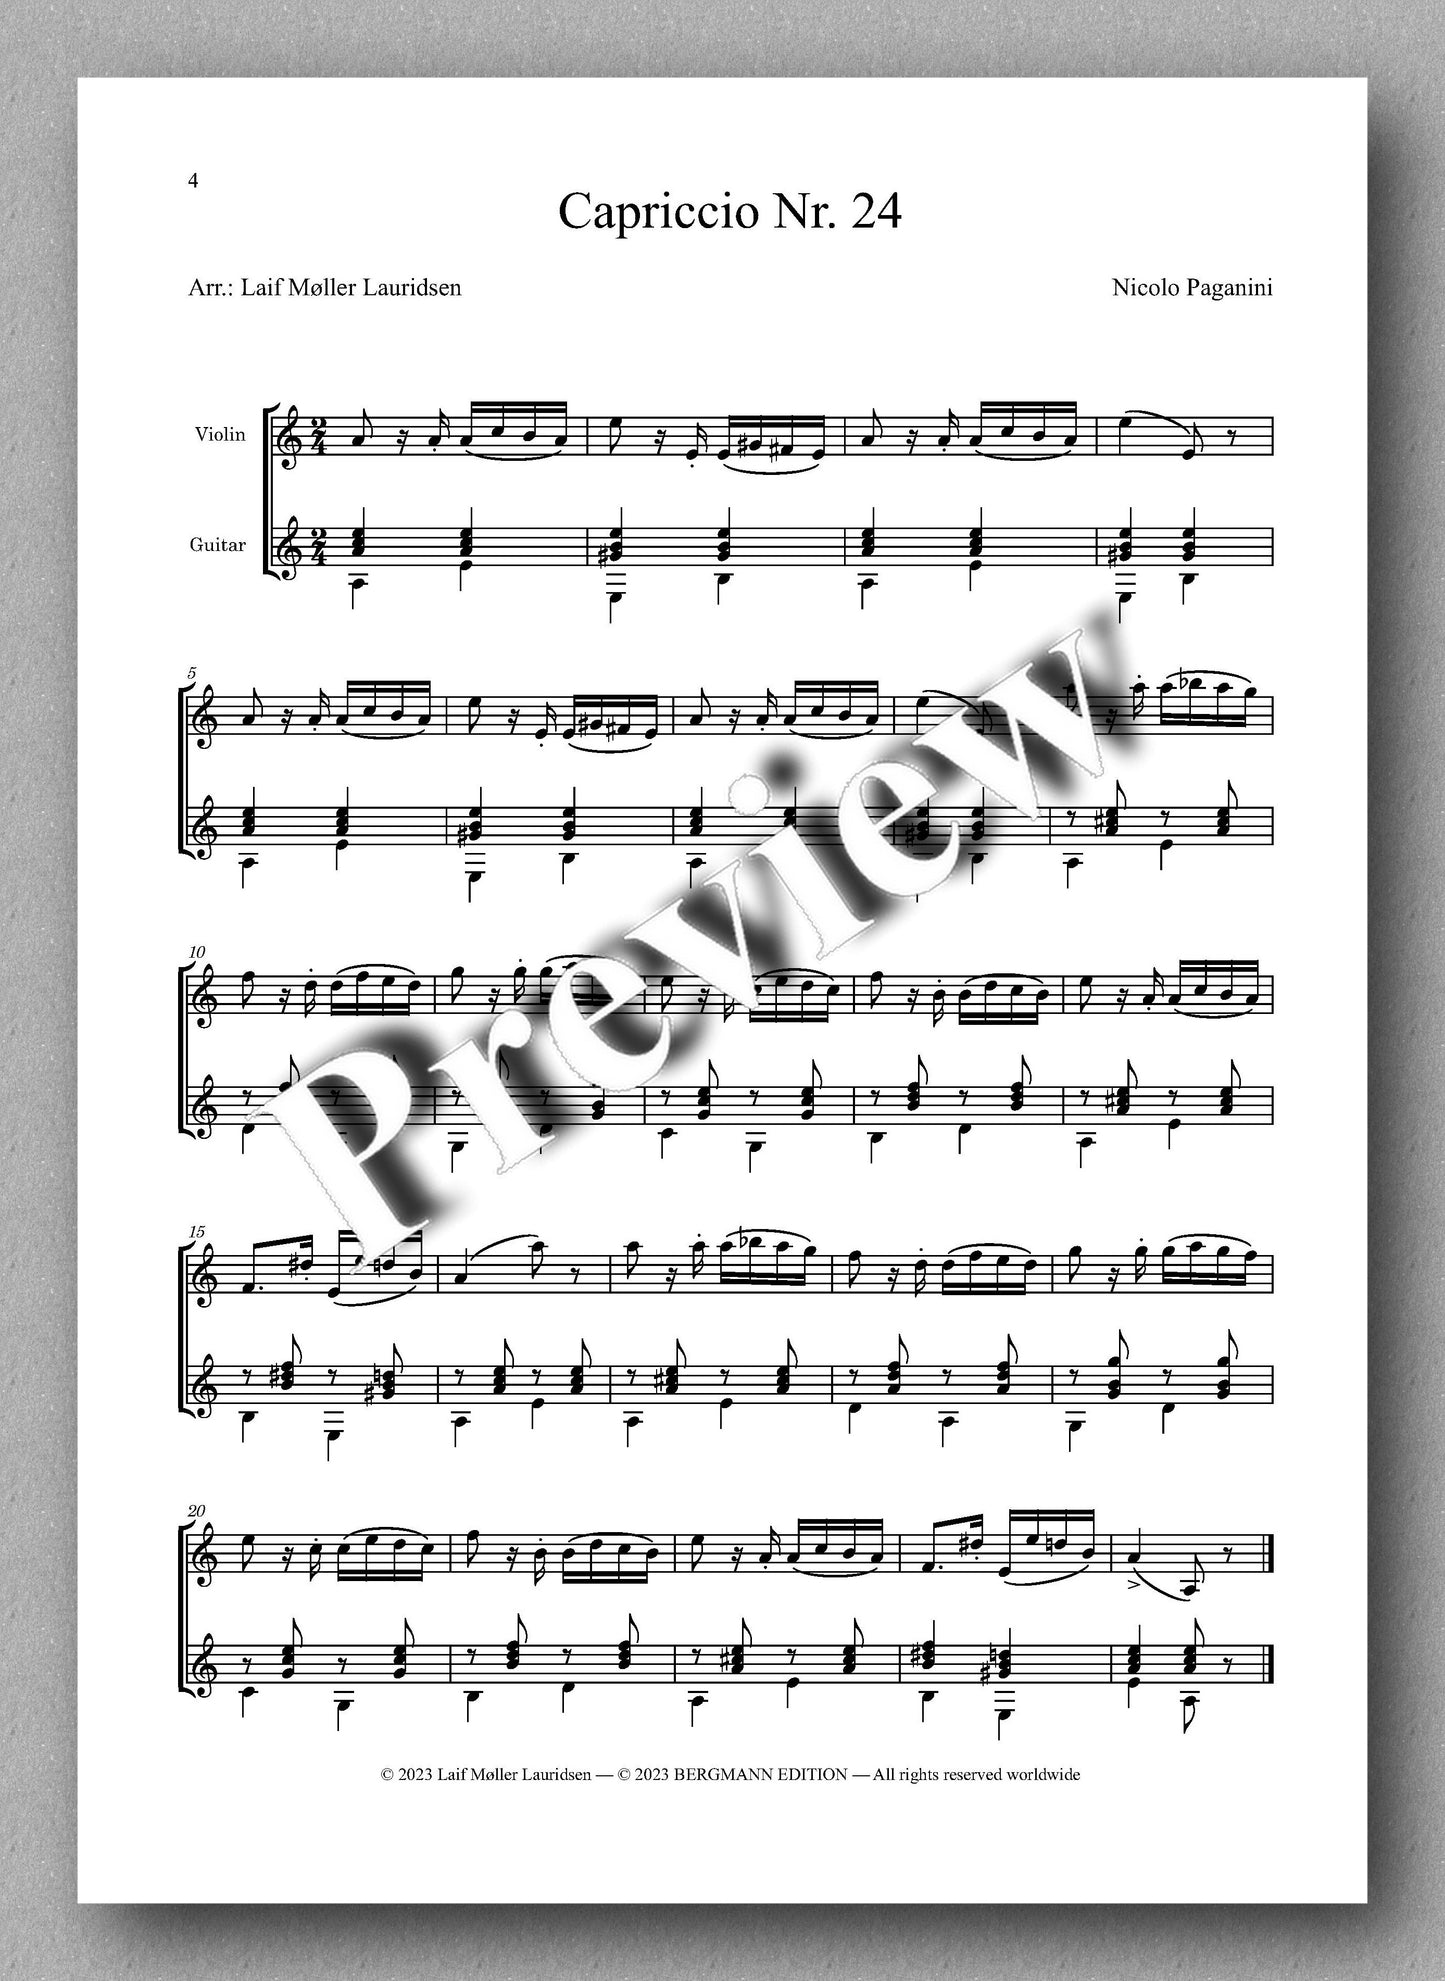 Nicolo Paganini, Capriccio Nr. 24 - preview of the music score 1